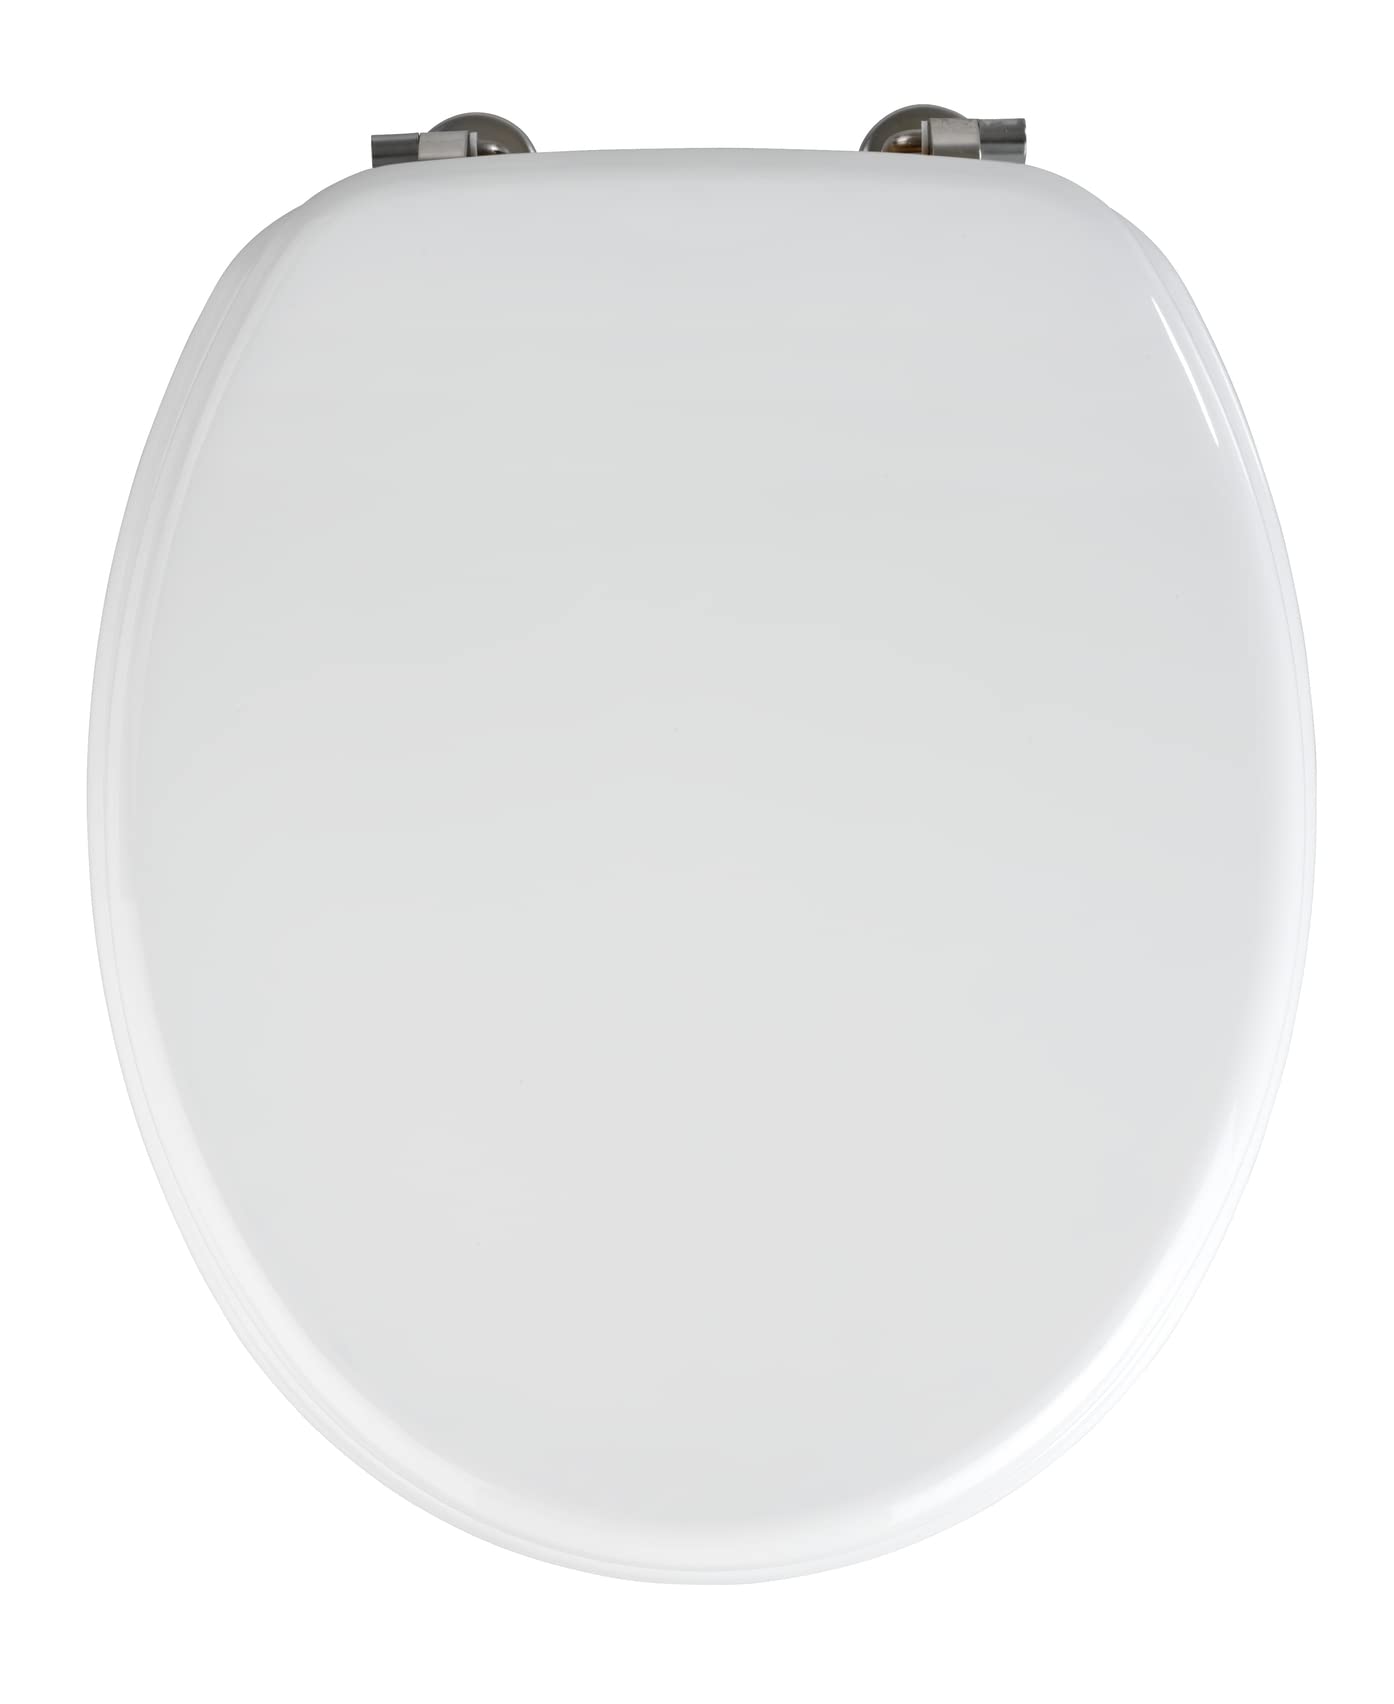 WENKO WC-Sitz Valencia Weiß - Toilettensitz, rostfreie Edelstahlbefestigung, MDF, 36 x 43 cm, Weiß